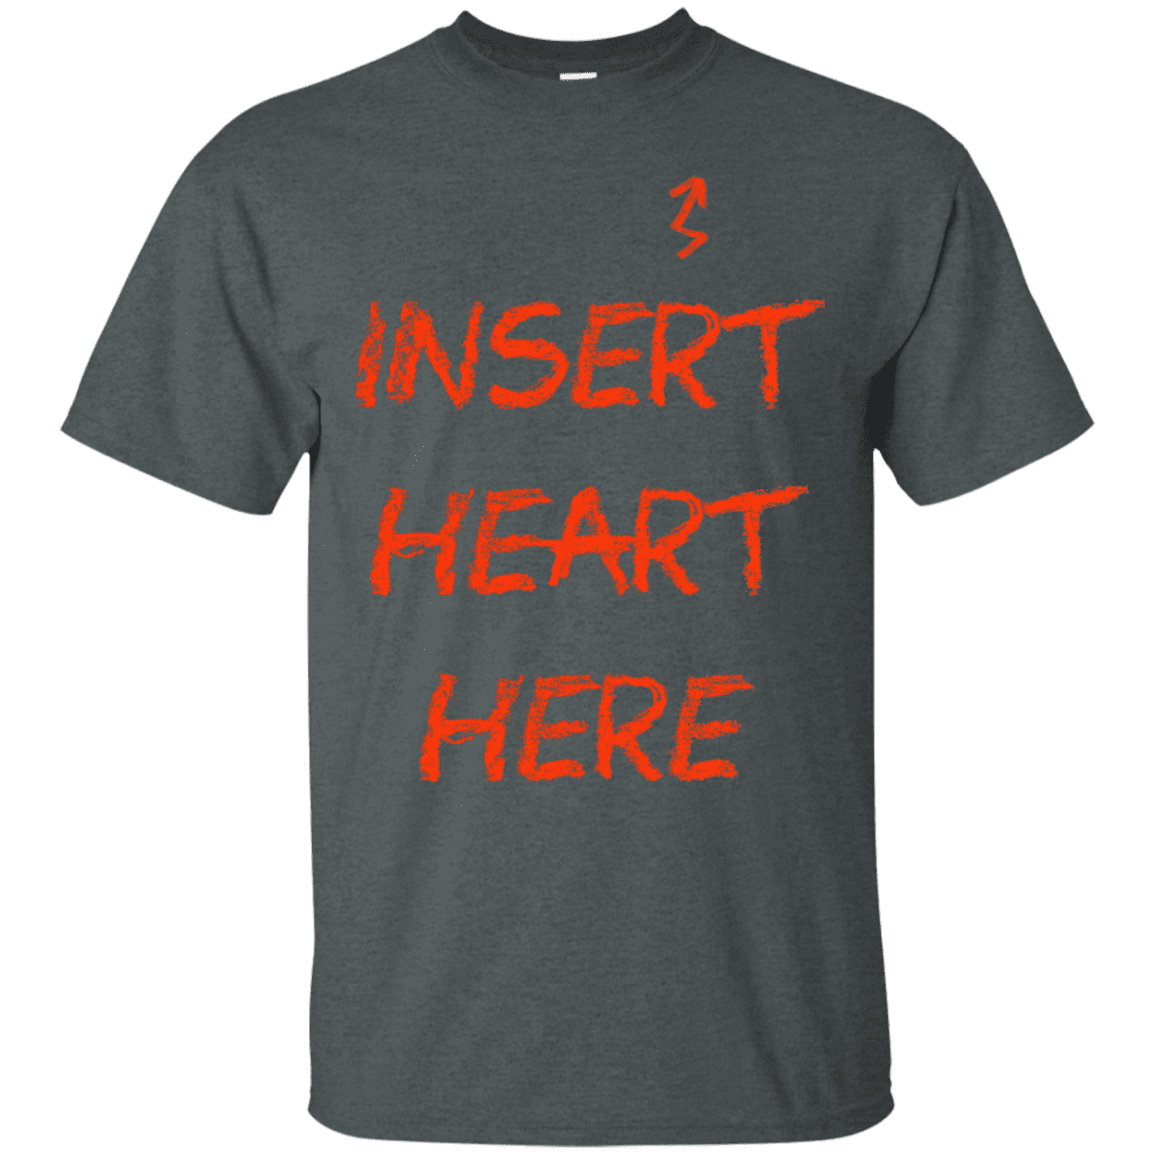 T-Shirts Dark Heather / S Insert Heart Here T-Shirt